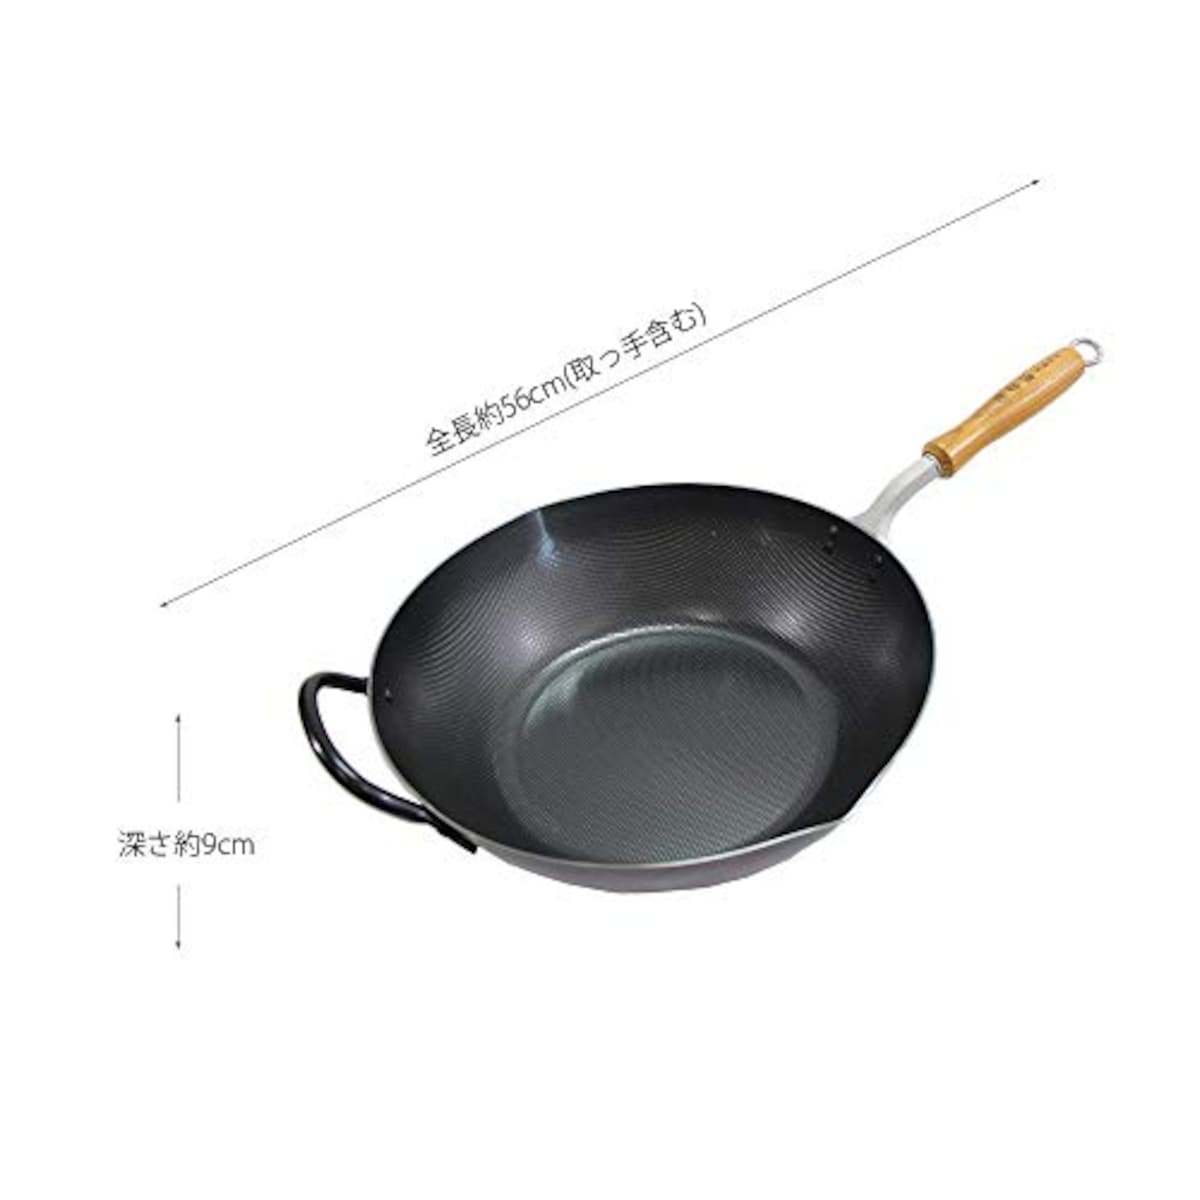  貝印 KAI フライパン 炒め鍋 30cm 譚彦彬 料理の達人 日本製 DY5103画像5 